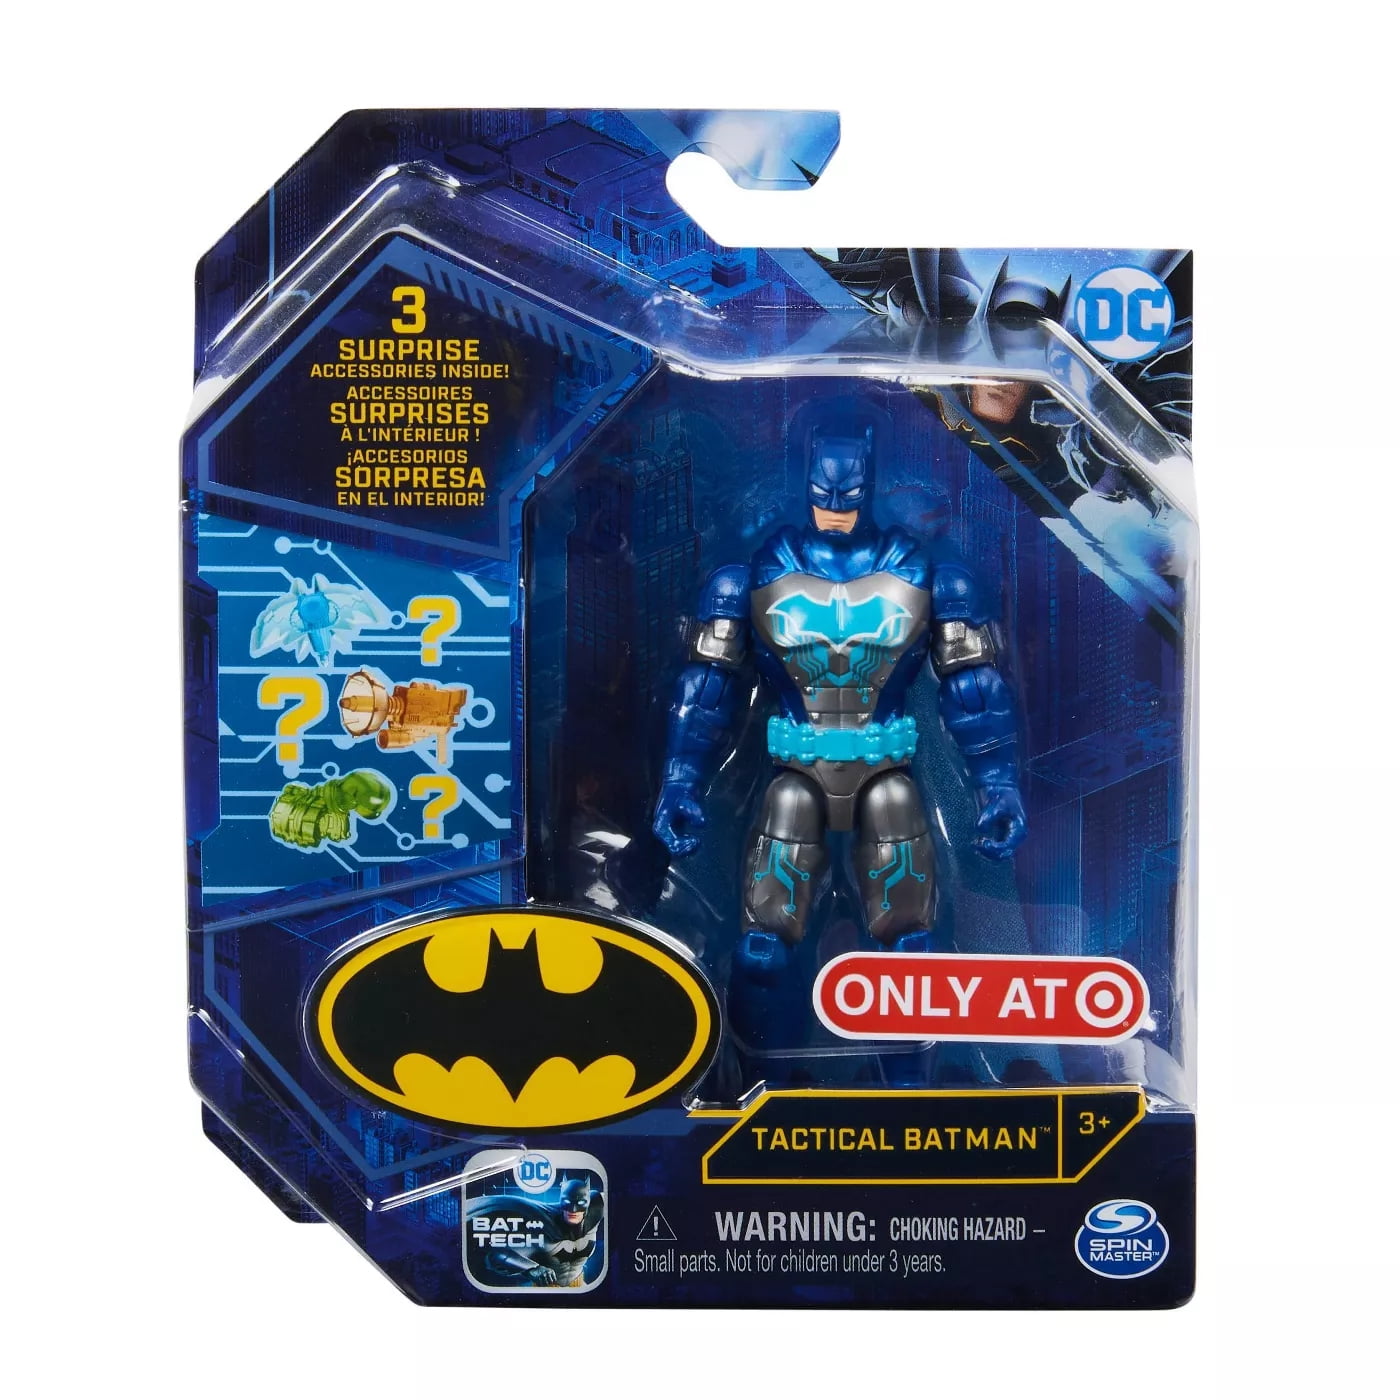 Andere plaatsen Veel Harde ring DC Comics Tactical Batman 4-inch Action Figure with 3 Mystery Accessories,  Exclusive - Walmart.com